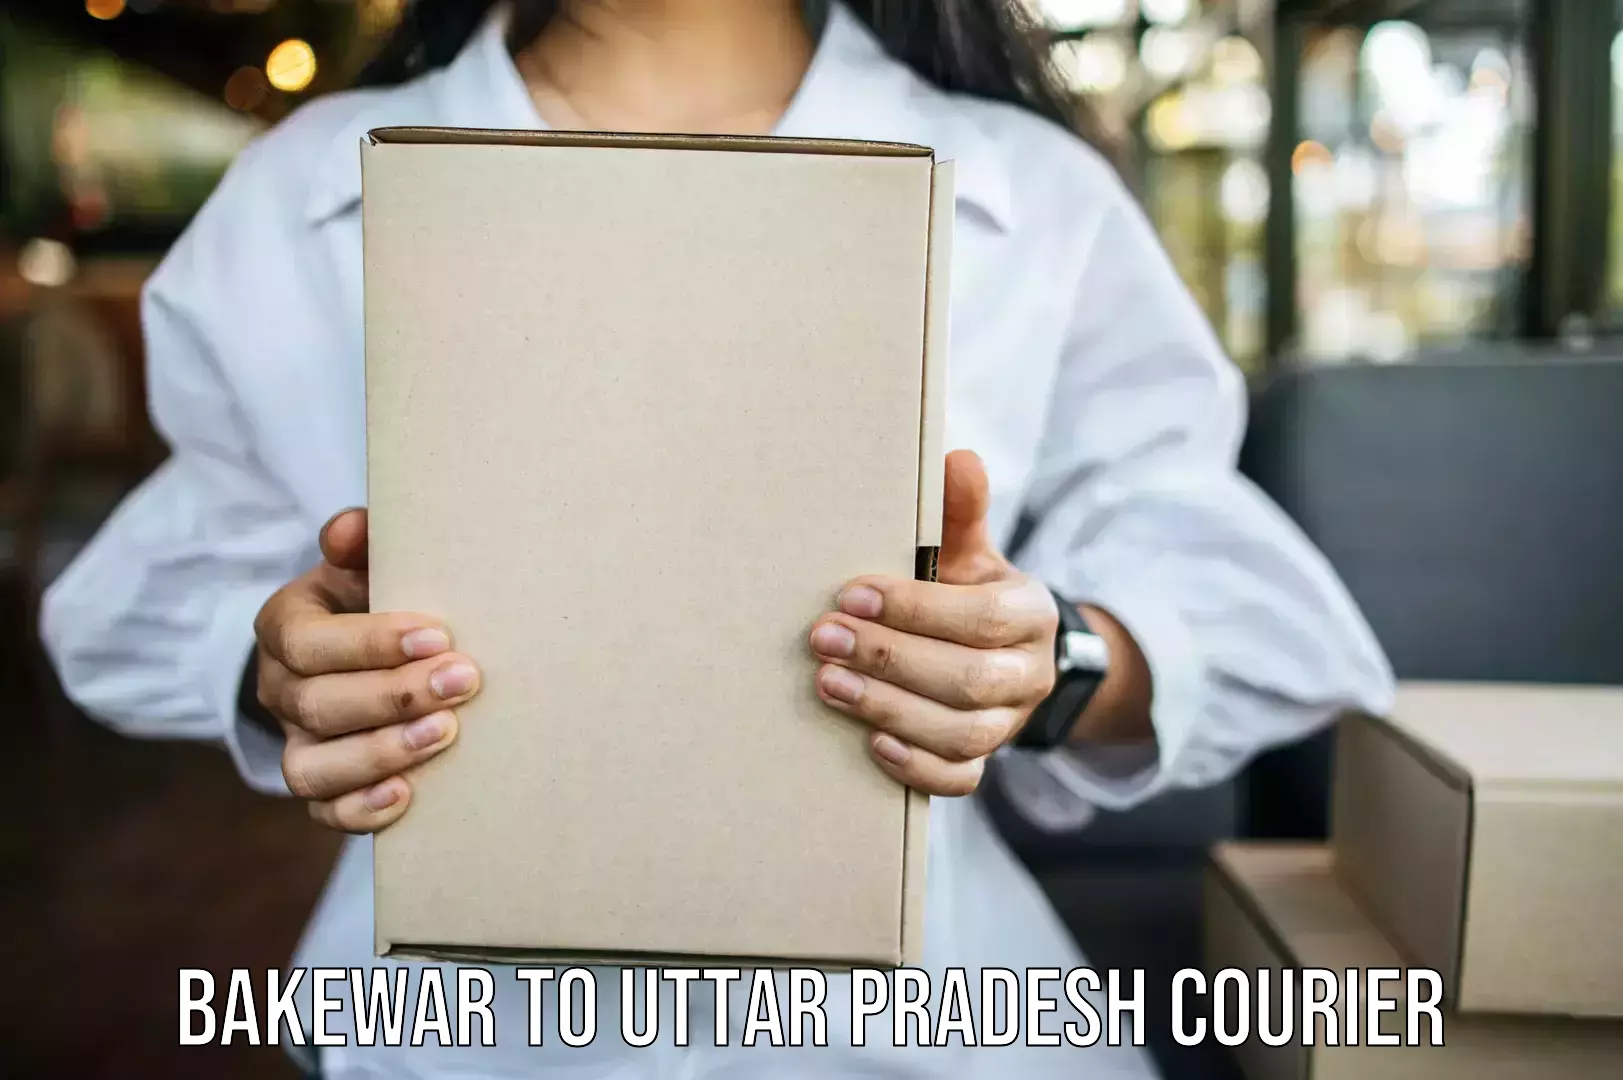 Furniture moving experts Bakewar to Uttar Pradesh